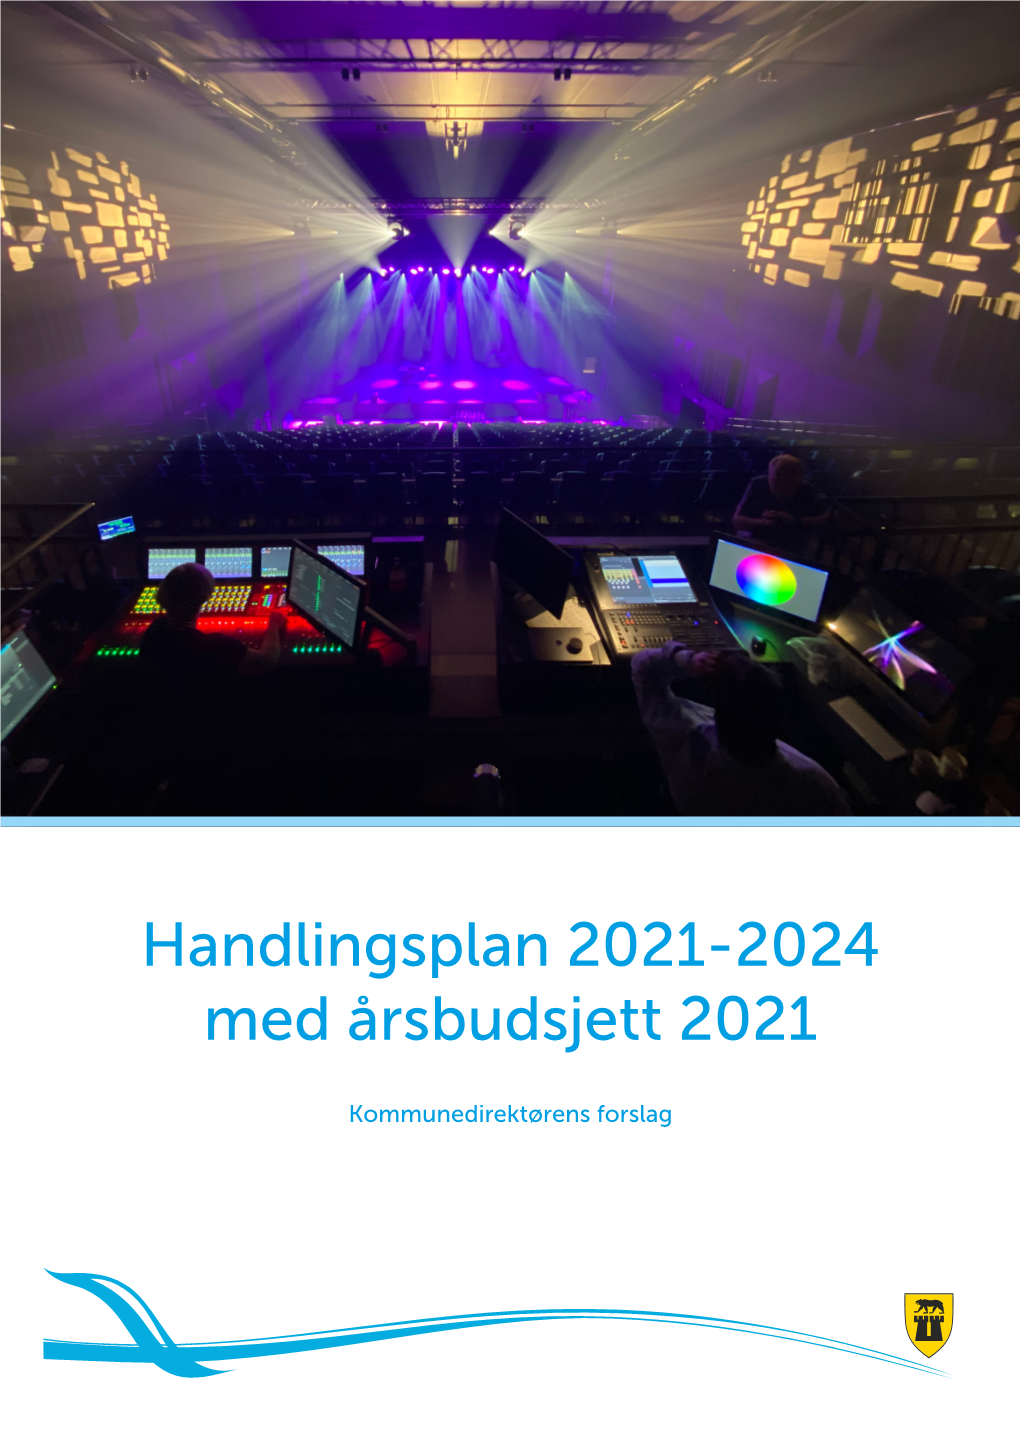 Her Kan Du Lese Dokumentet Handlingsplan 2021-2024 Med